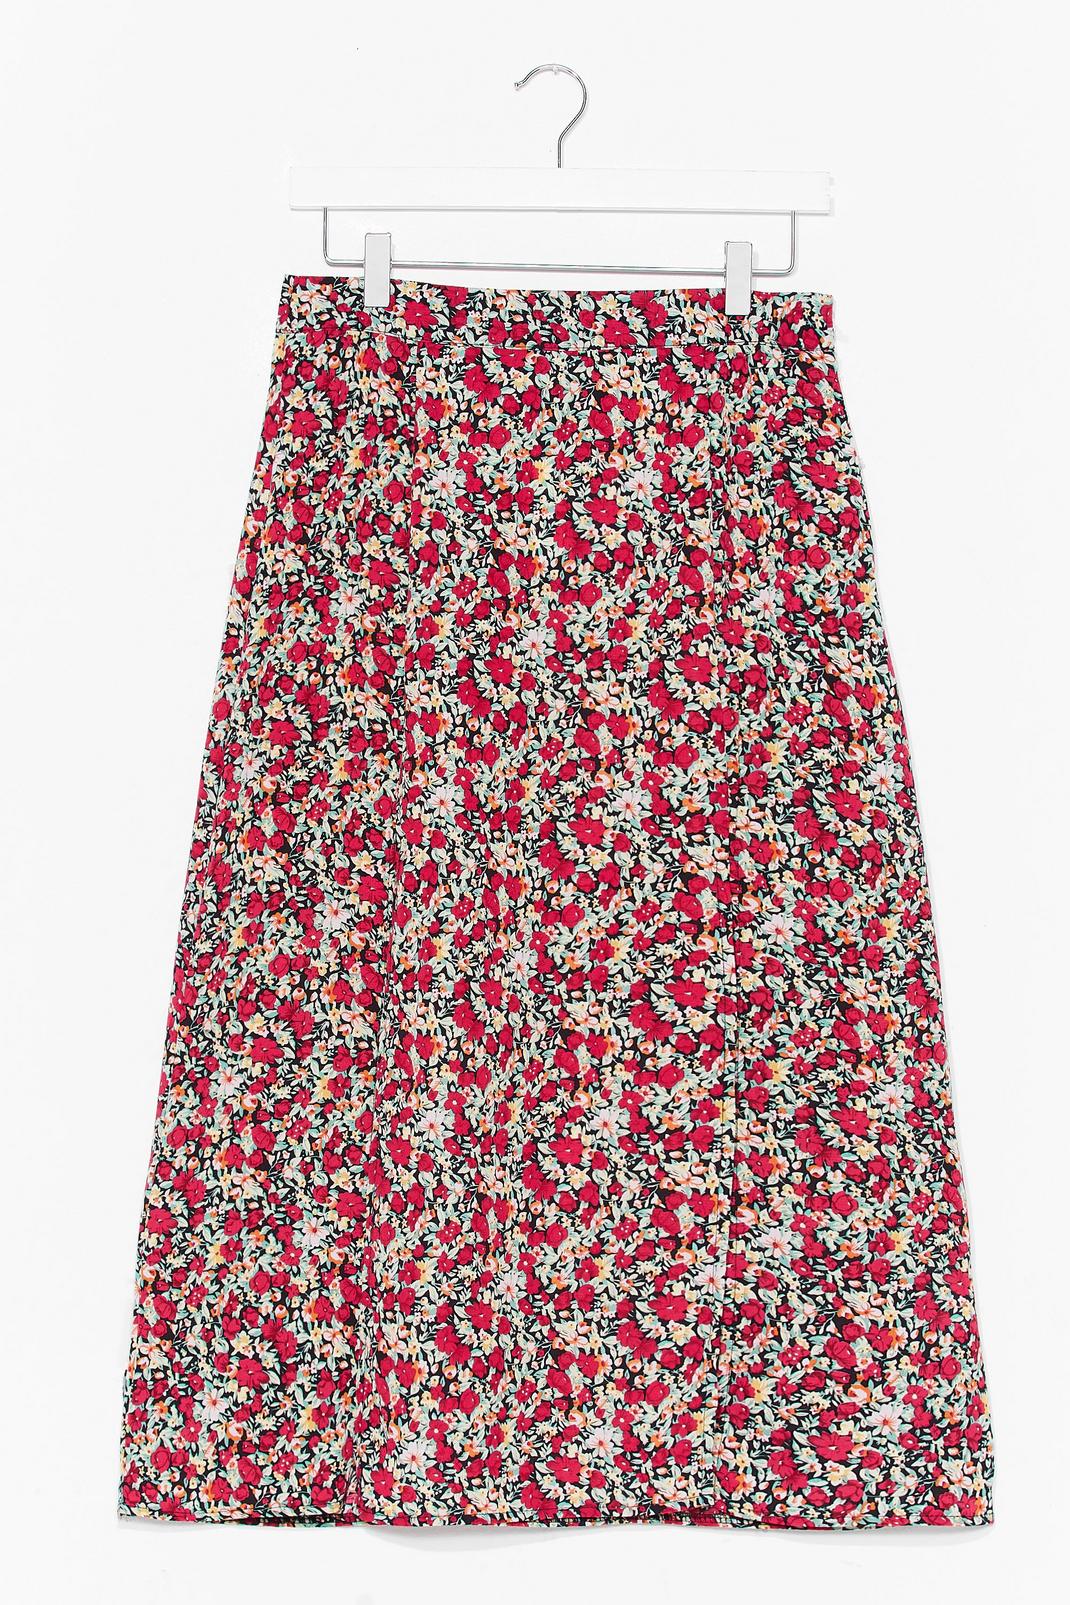 Make Slit Happen Floral Midi Skirt image number 1